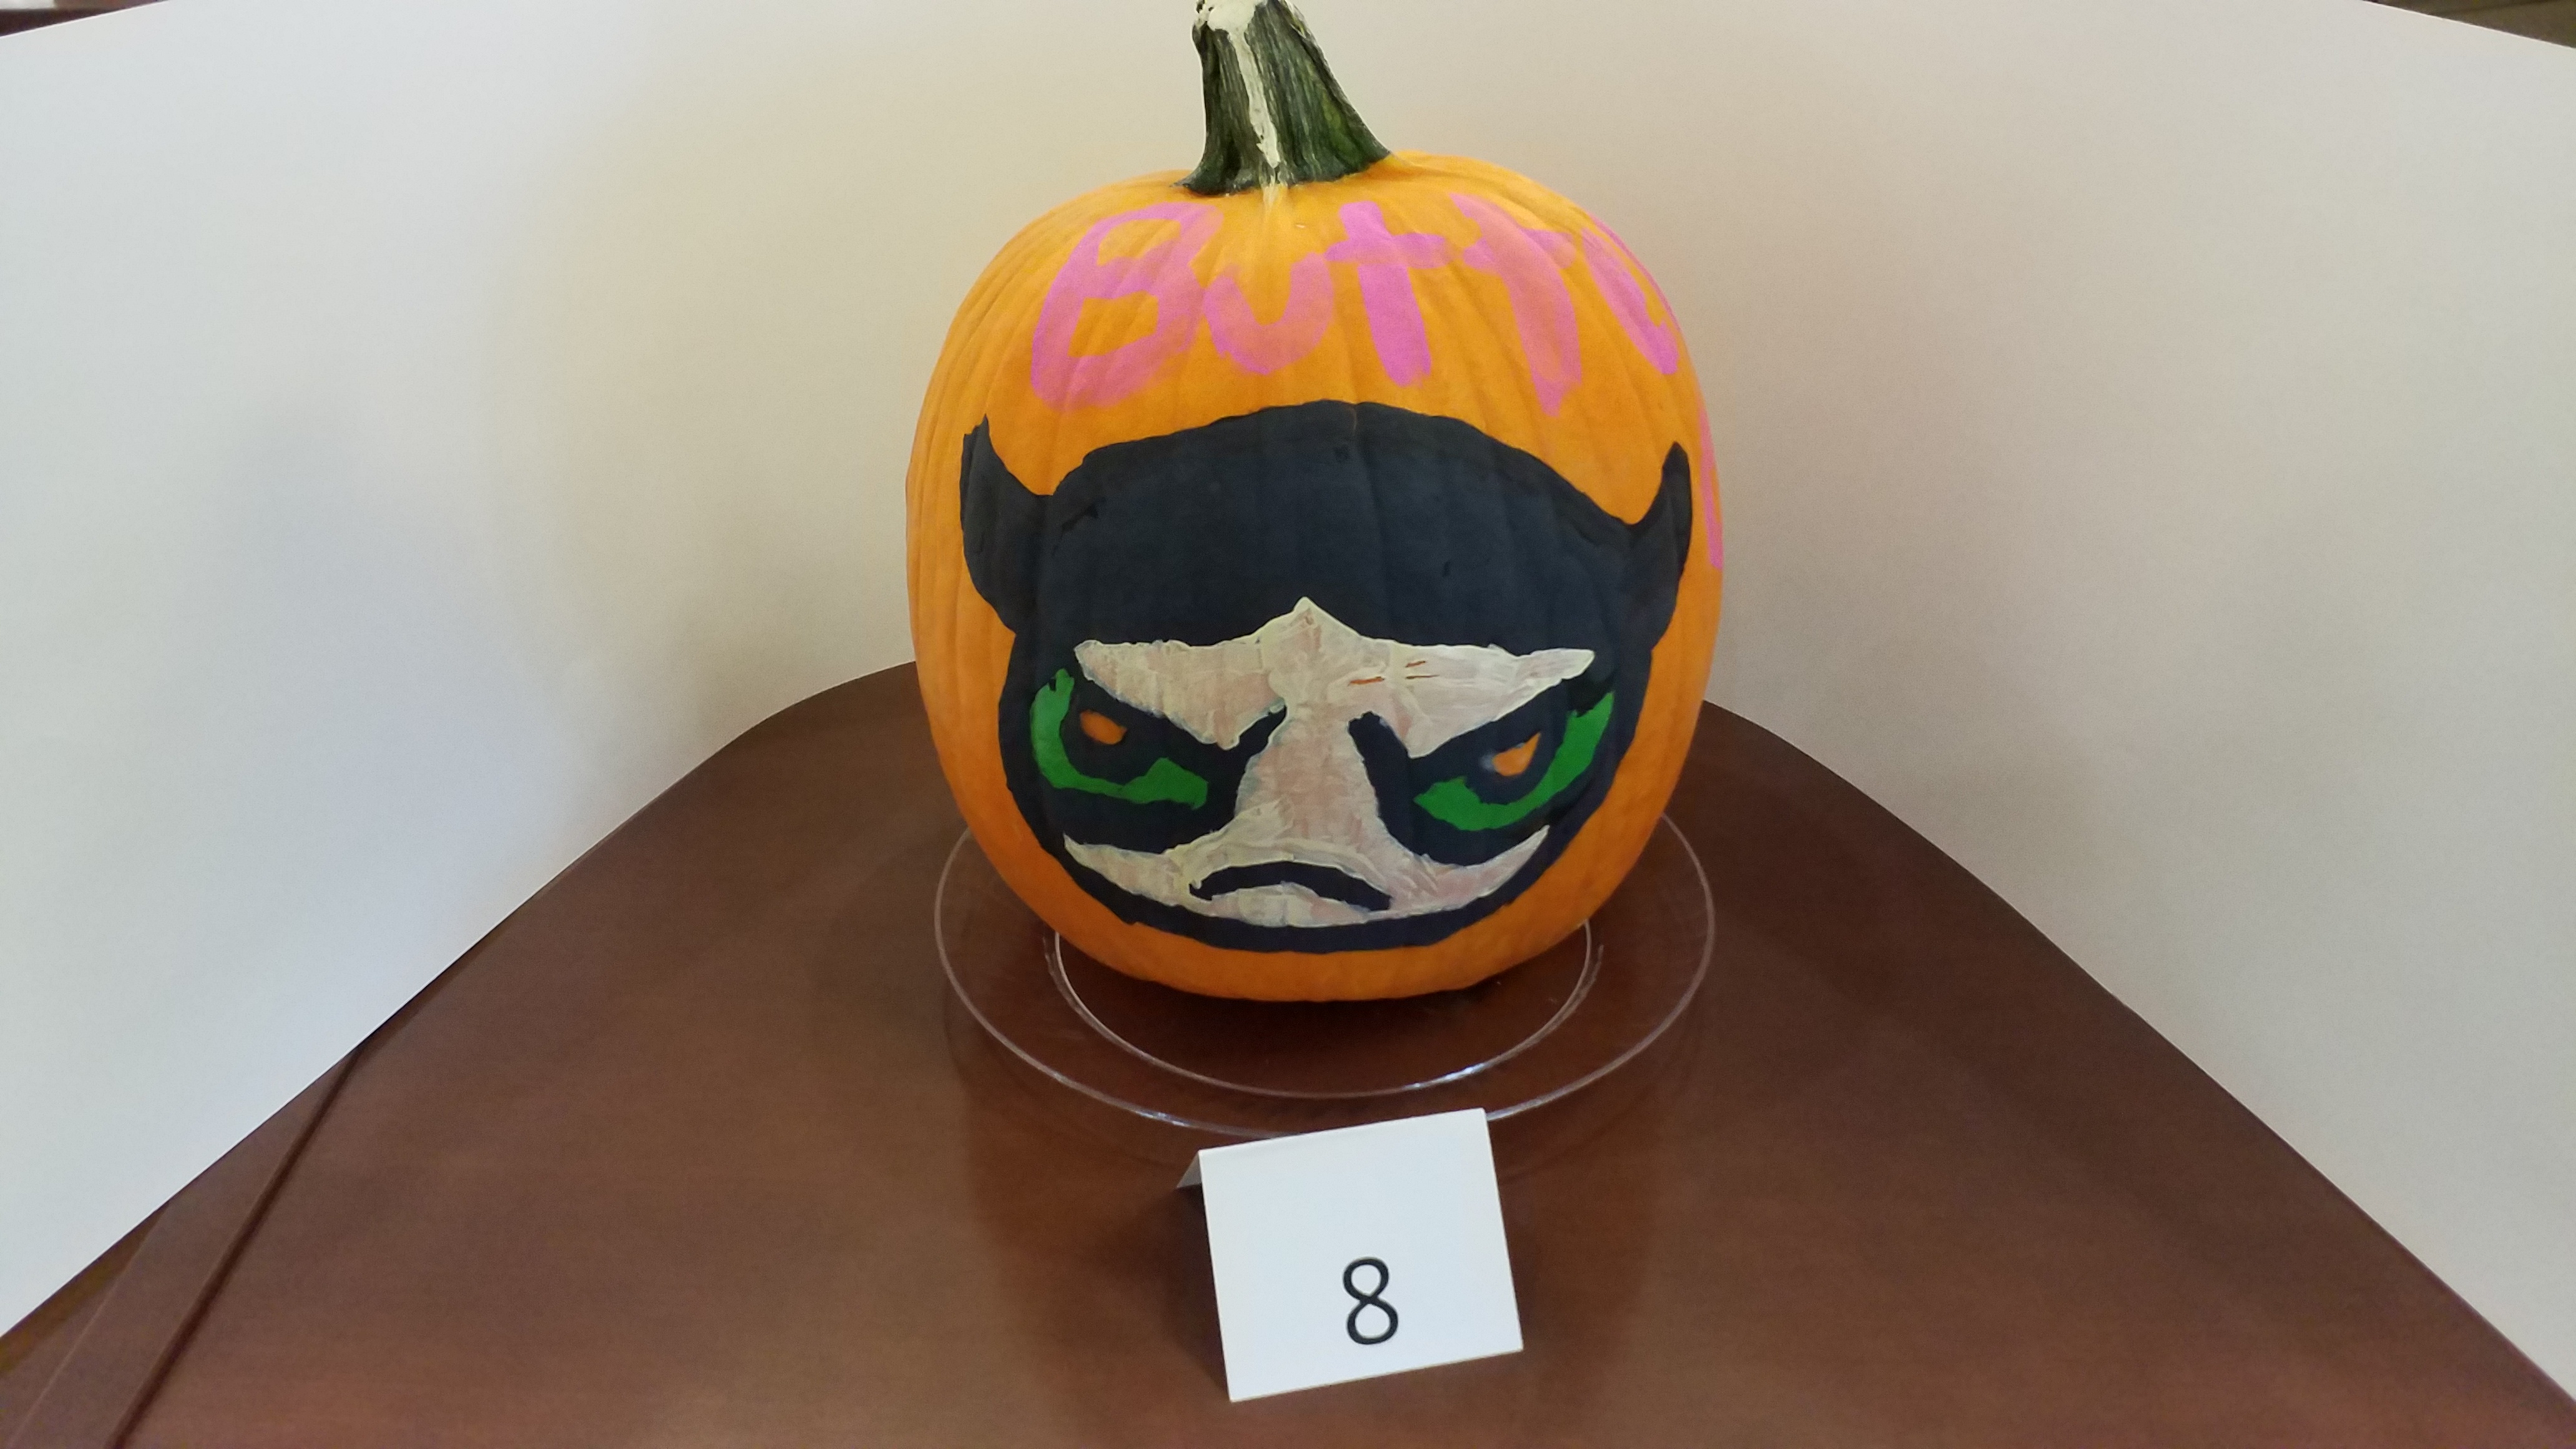 Pumpkin decorated as Buttercup from "The Powerpuff Girls"